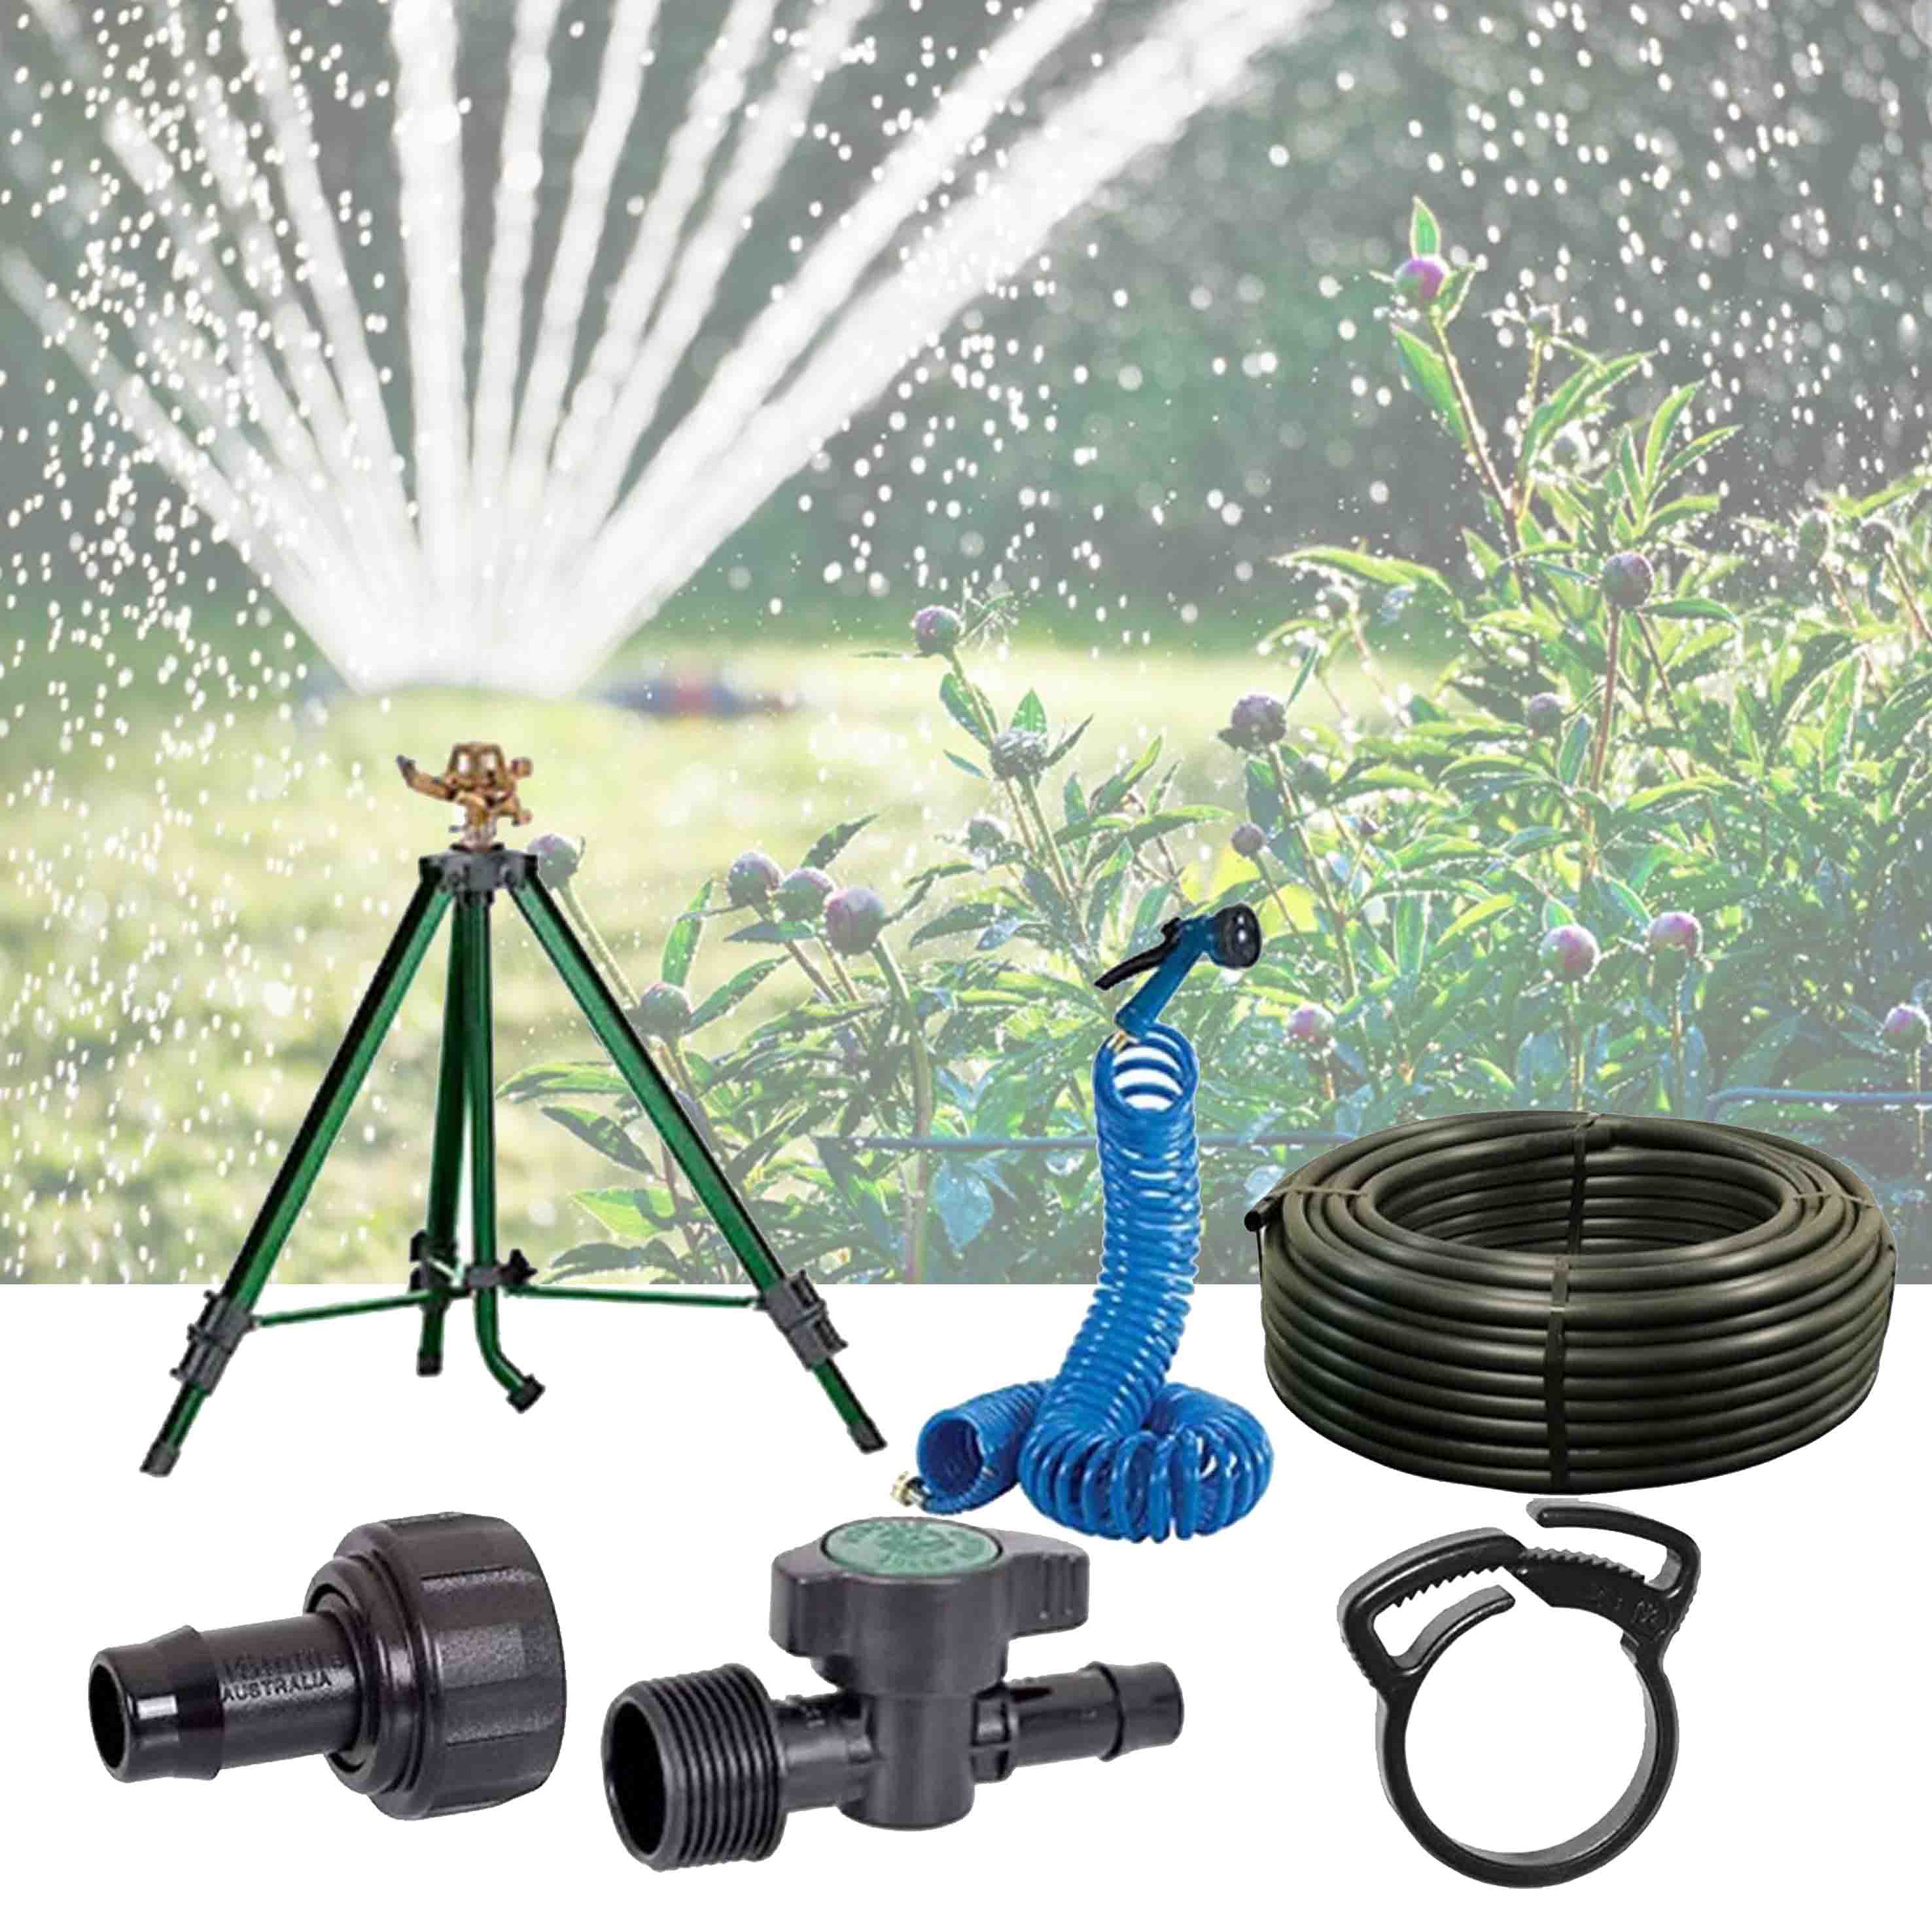 Garden Irrigation Products